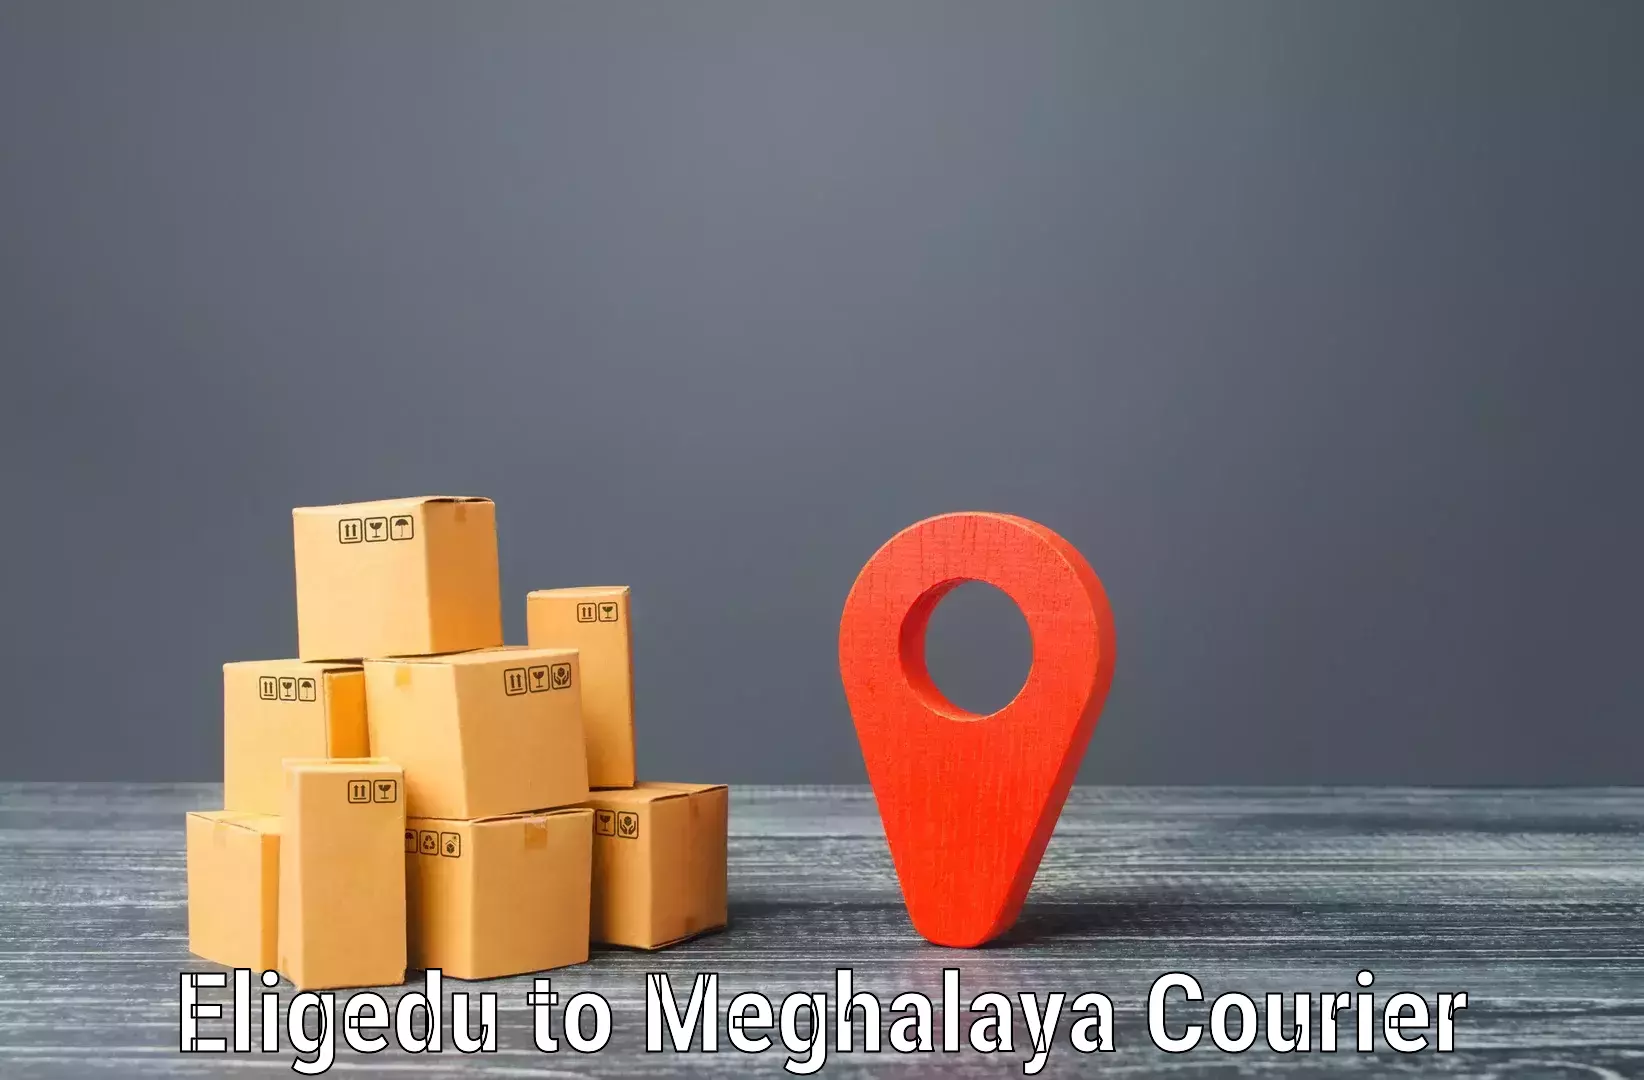 Next-generation courier services Eligedu to Garobadha